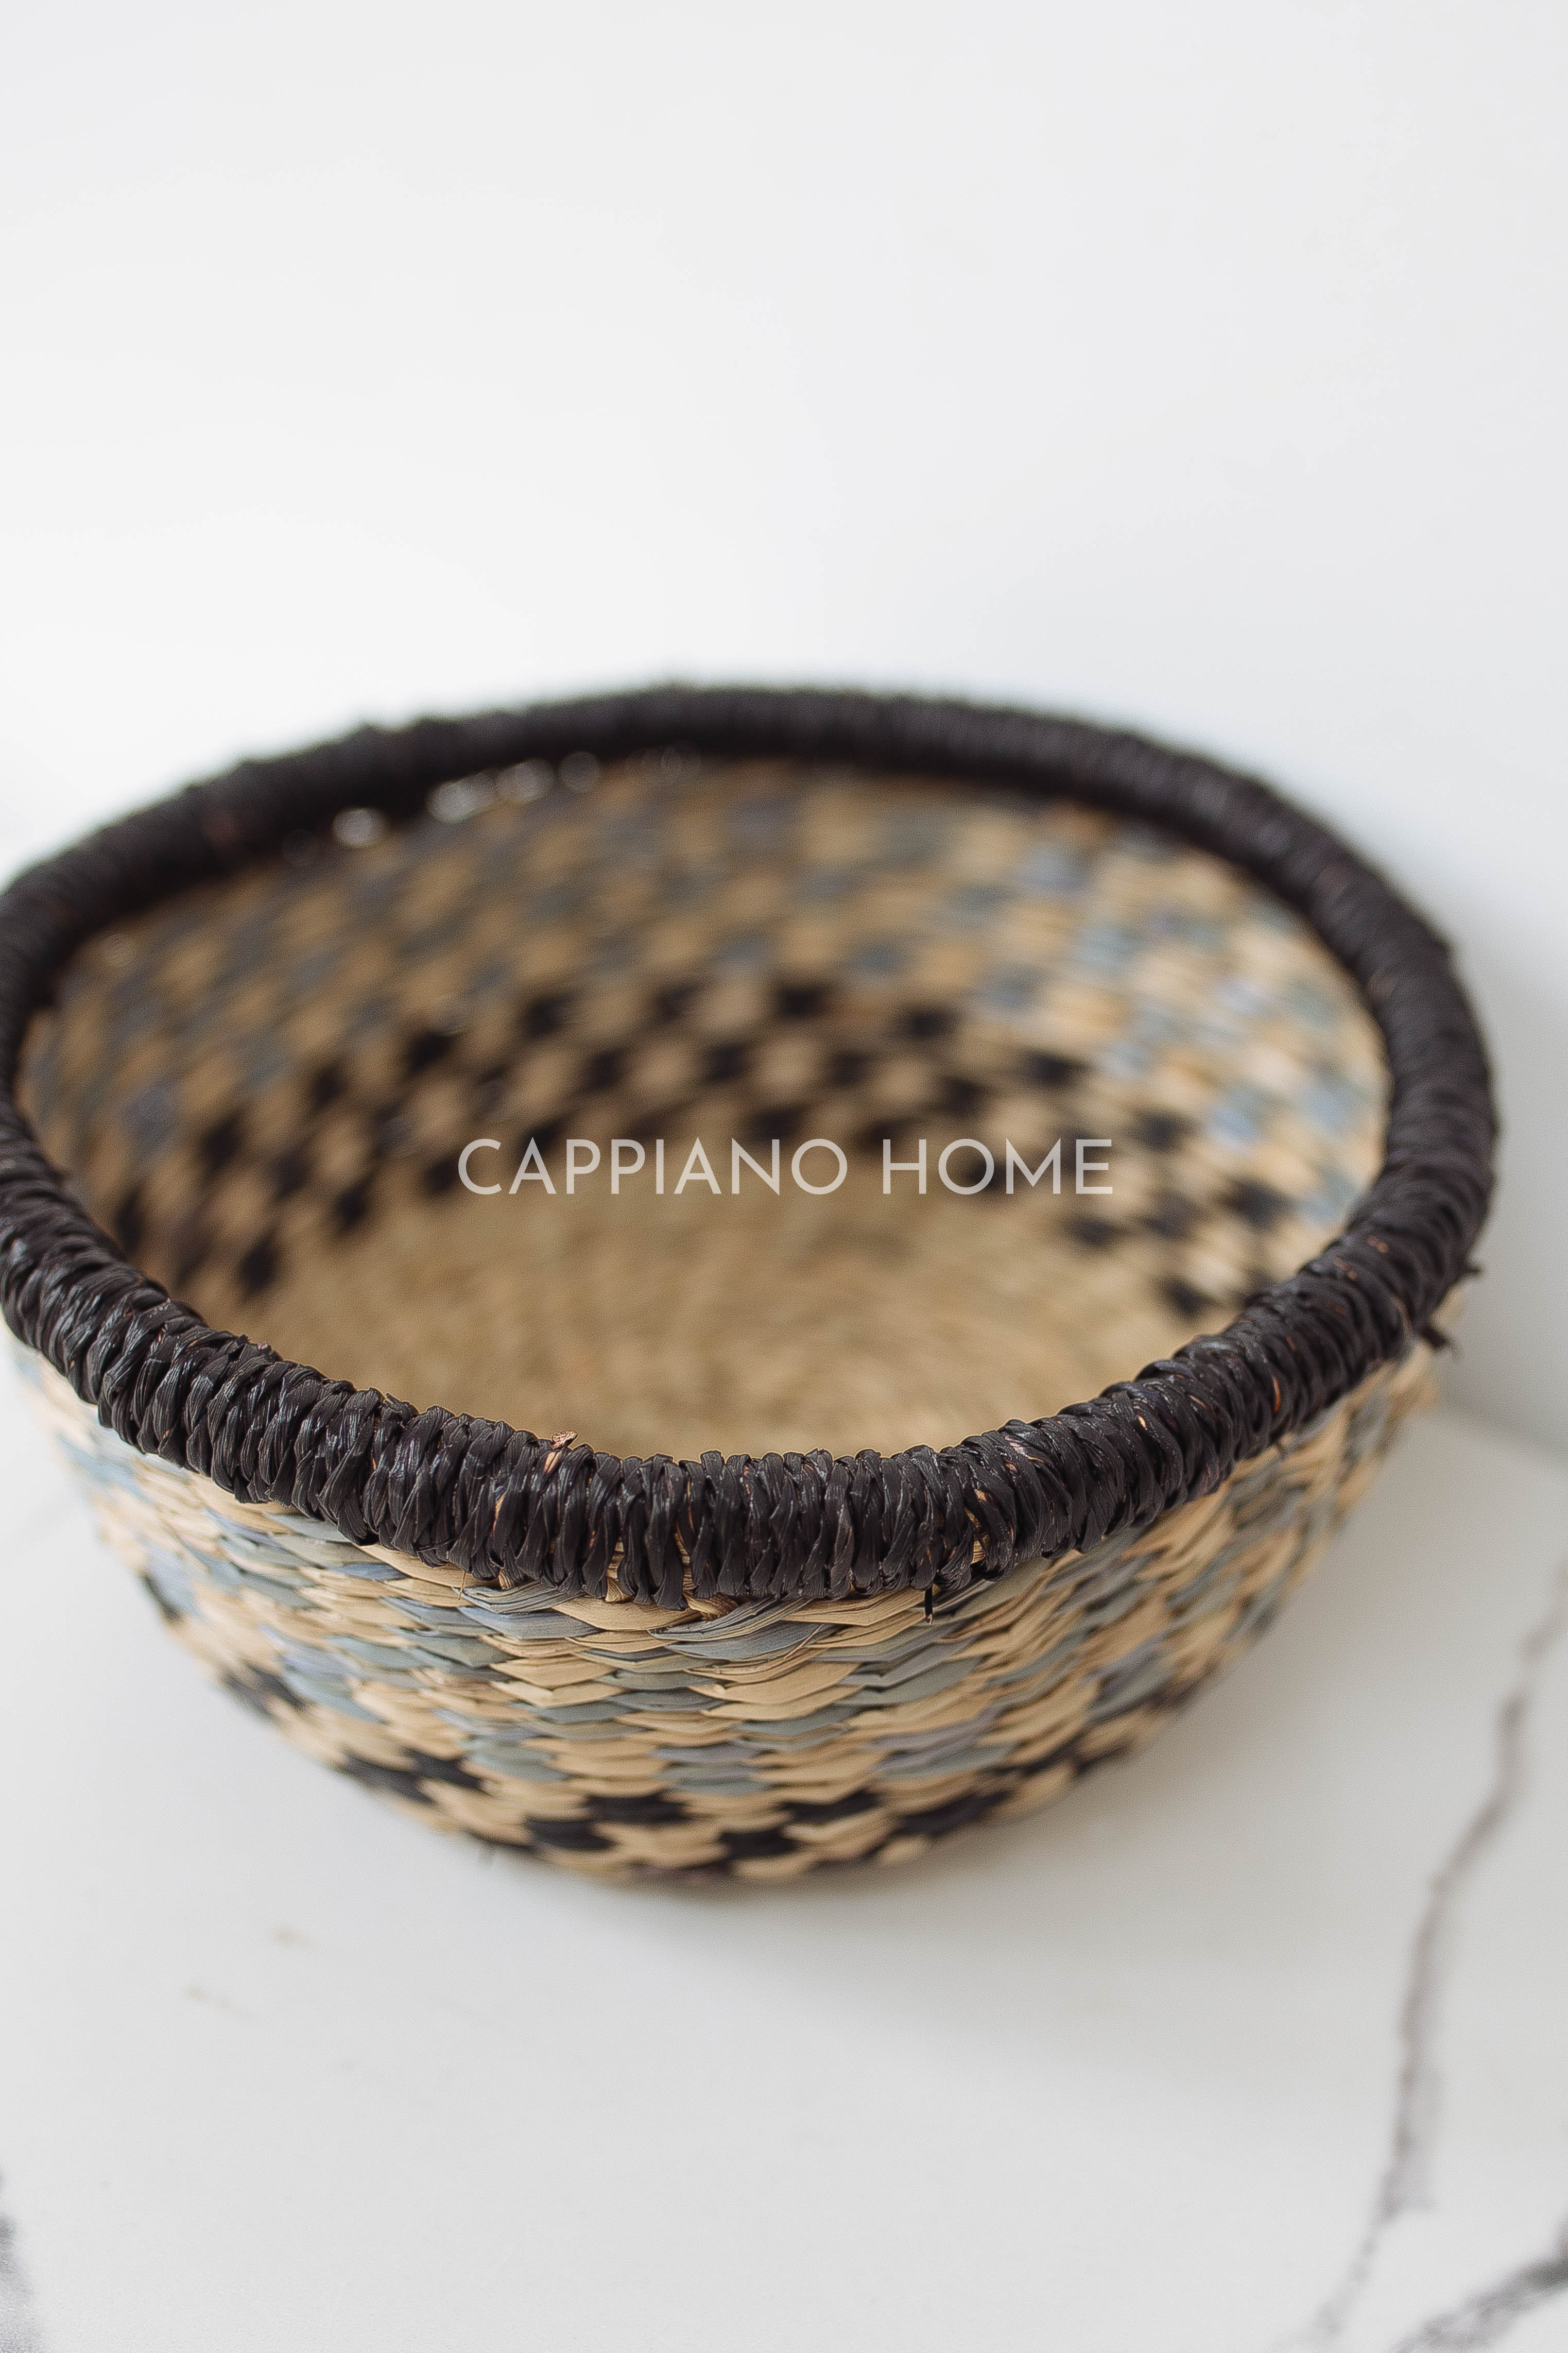 Giỏ Chad tay cầm, giỏ đựng đồ quần áo, đựng thực phẩm - Giỏ sọc đen, giỏ decor | Cappiano Home